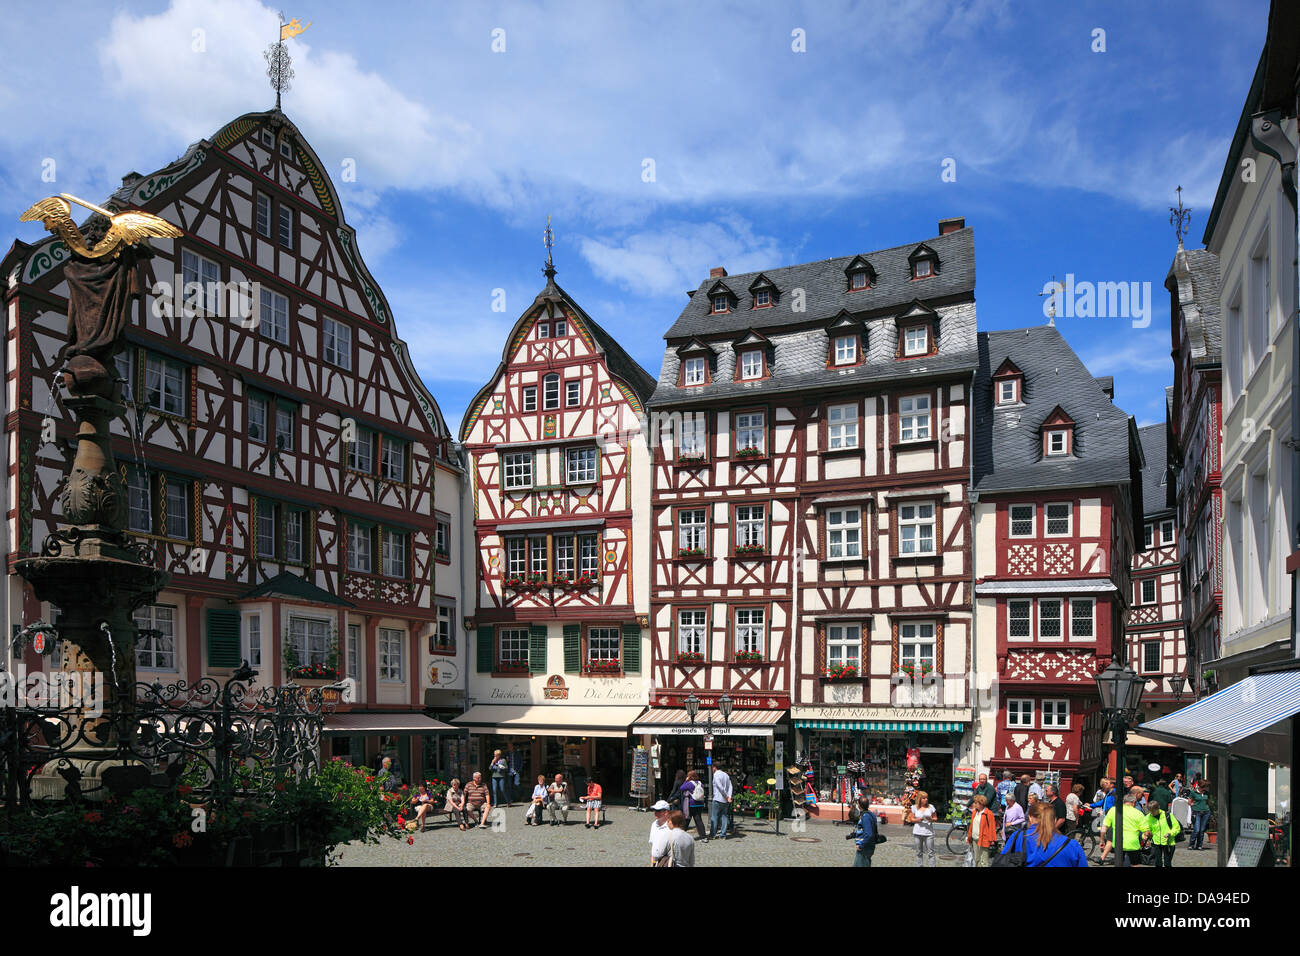 Germany, Europe, Bernkastel-Kues, medicinal bath, Moselle, Mittelmosel, Rhineland-Palatinate, marketplace, half-timbered houses, Stock Photo